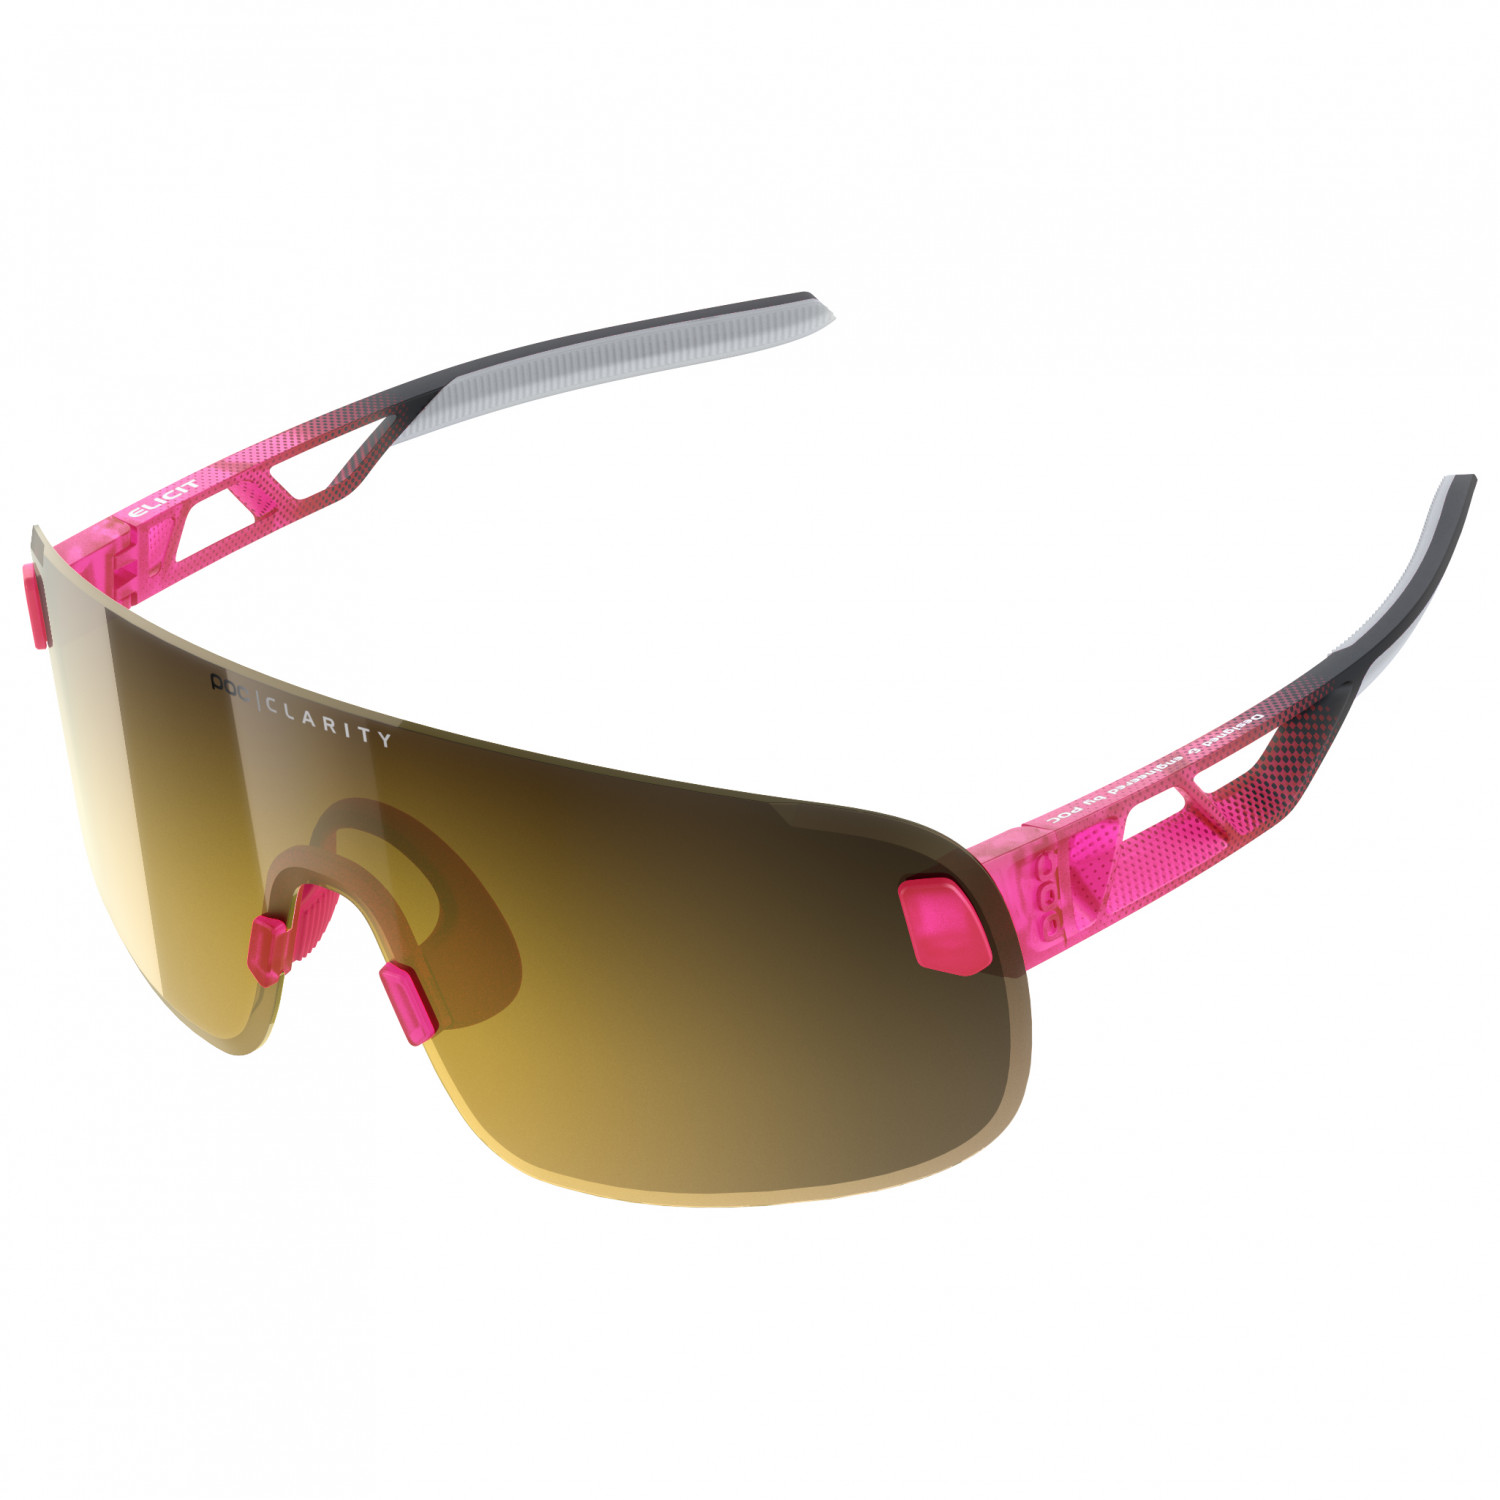 Велосипедные очки Poc Elicit S2 (VLT 16%), цвет Fluorescent Pink/Uranium Black Translucent rega elicit r black